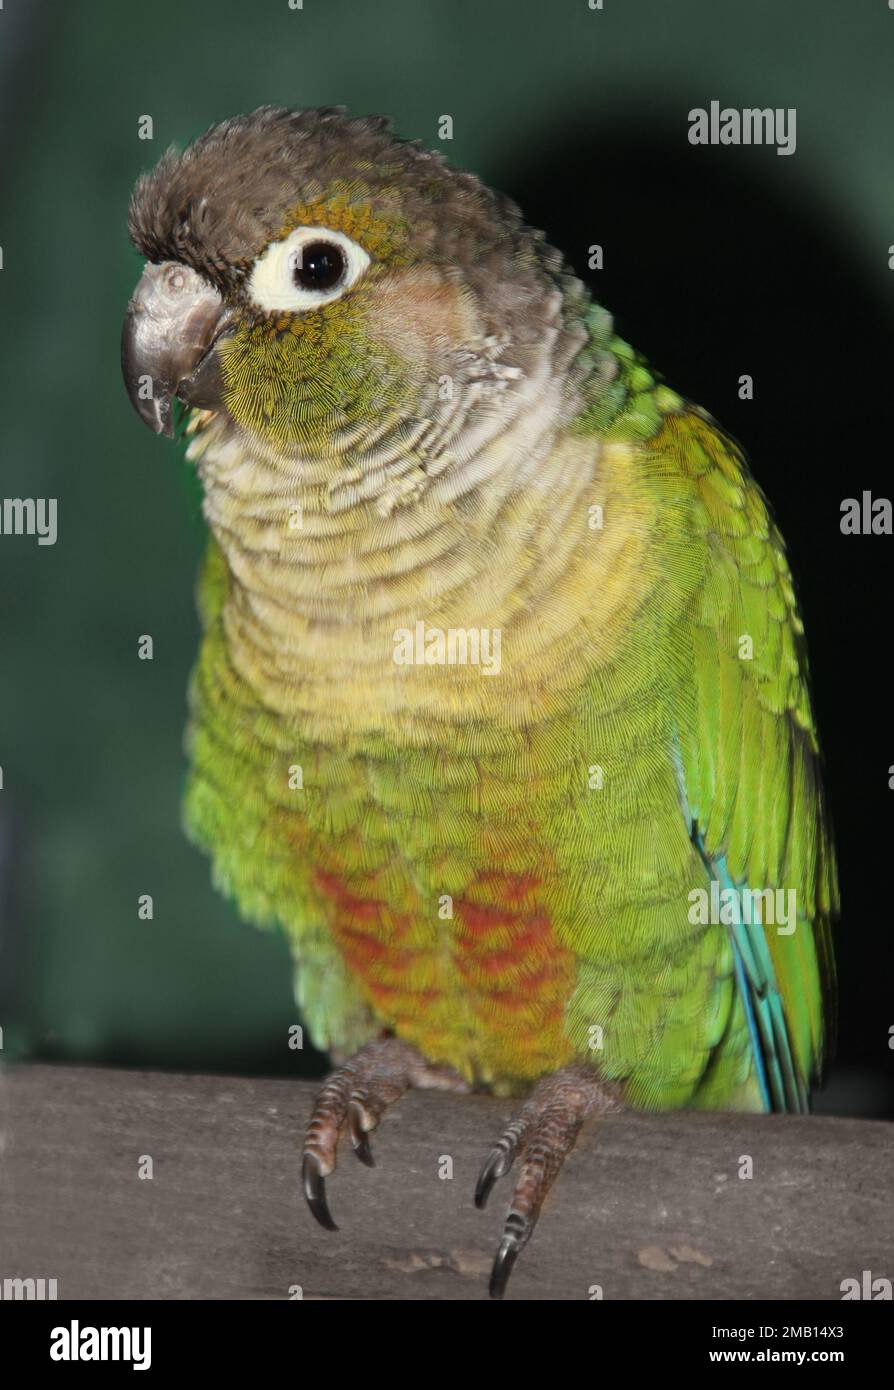 Un ritratto di una guancia verde conure arroccato su un bastone di legno. Vedete la pancia dell'uccello e un occhio. Sembra molto carino e amichevole Foto Stock